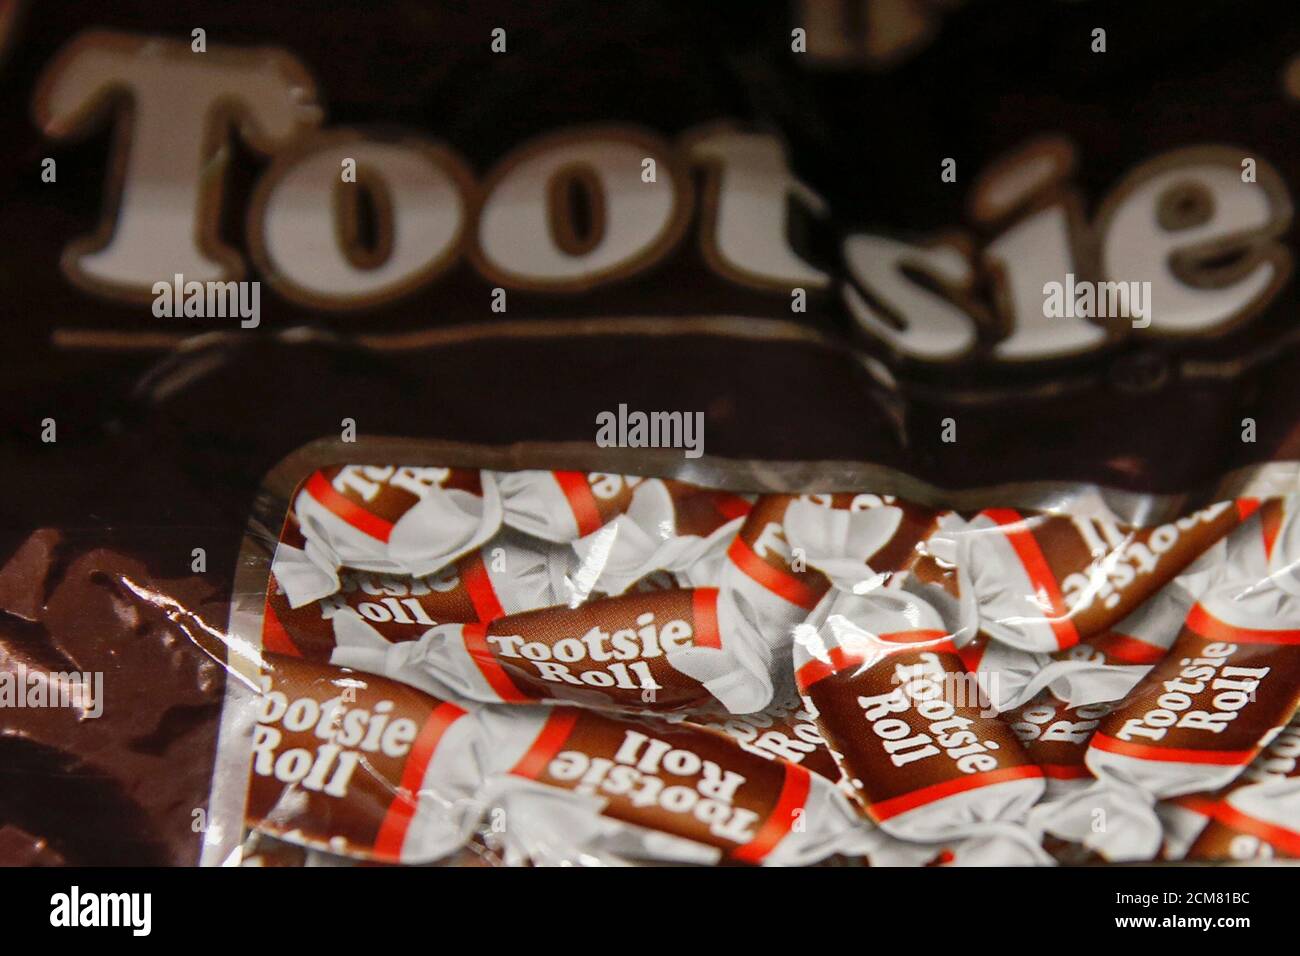 Una bolsa de caramelos Tootsie Roll se ve en Nueva York el 21 de enero de 2015. Melvin Gordon, director ejecutivo de Tootsie Roll Industries Inc, murió a la edad de 95 años después de una breve enfermedad, dijo la compañía, especulando con que el fabricante de caramelos podría ser adquirido. REUTERS/Shannon Stapleton (ESTADOS UNIDOS - Tags: BUSINESS OBITUARY FOOD) Foto de stock